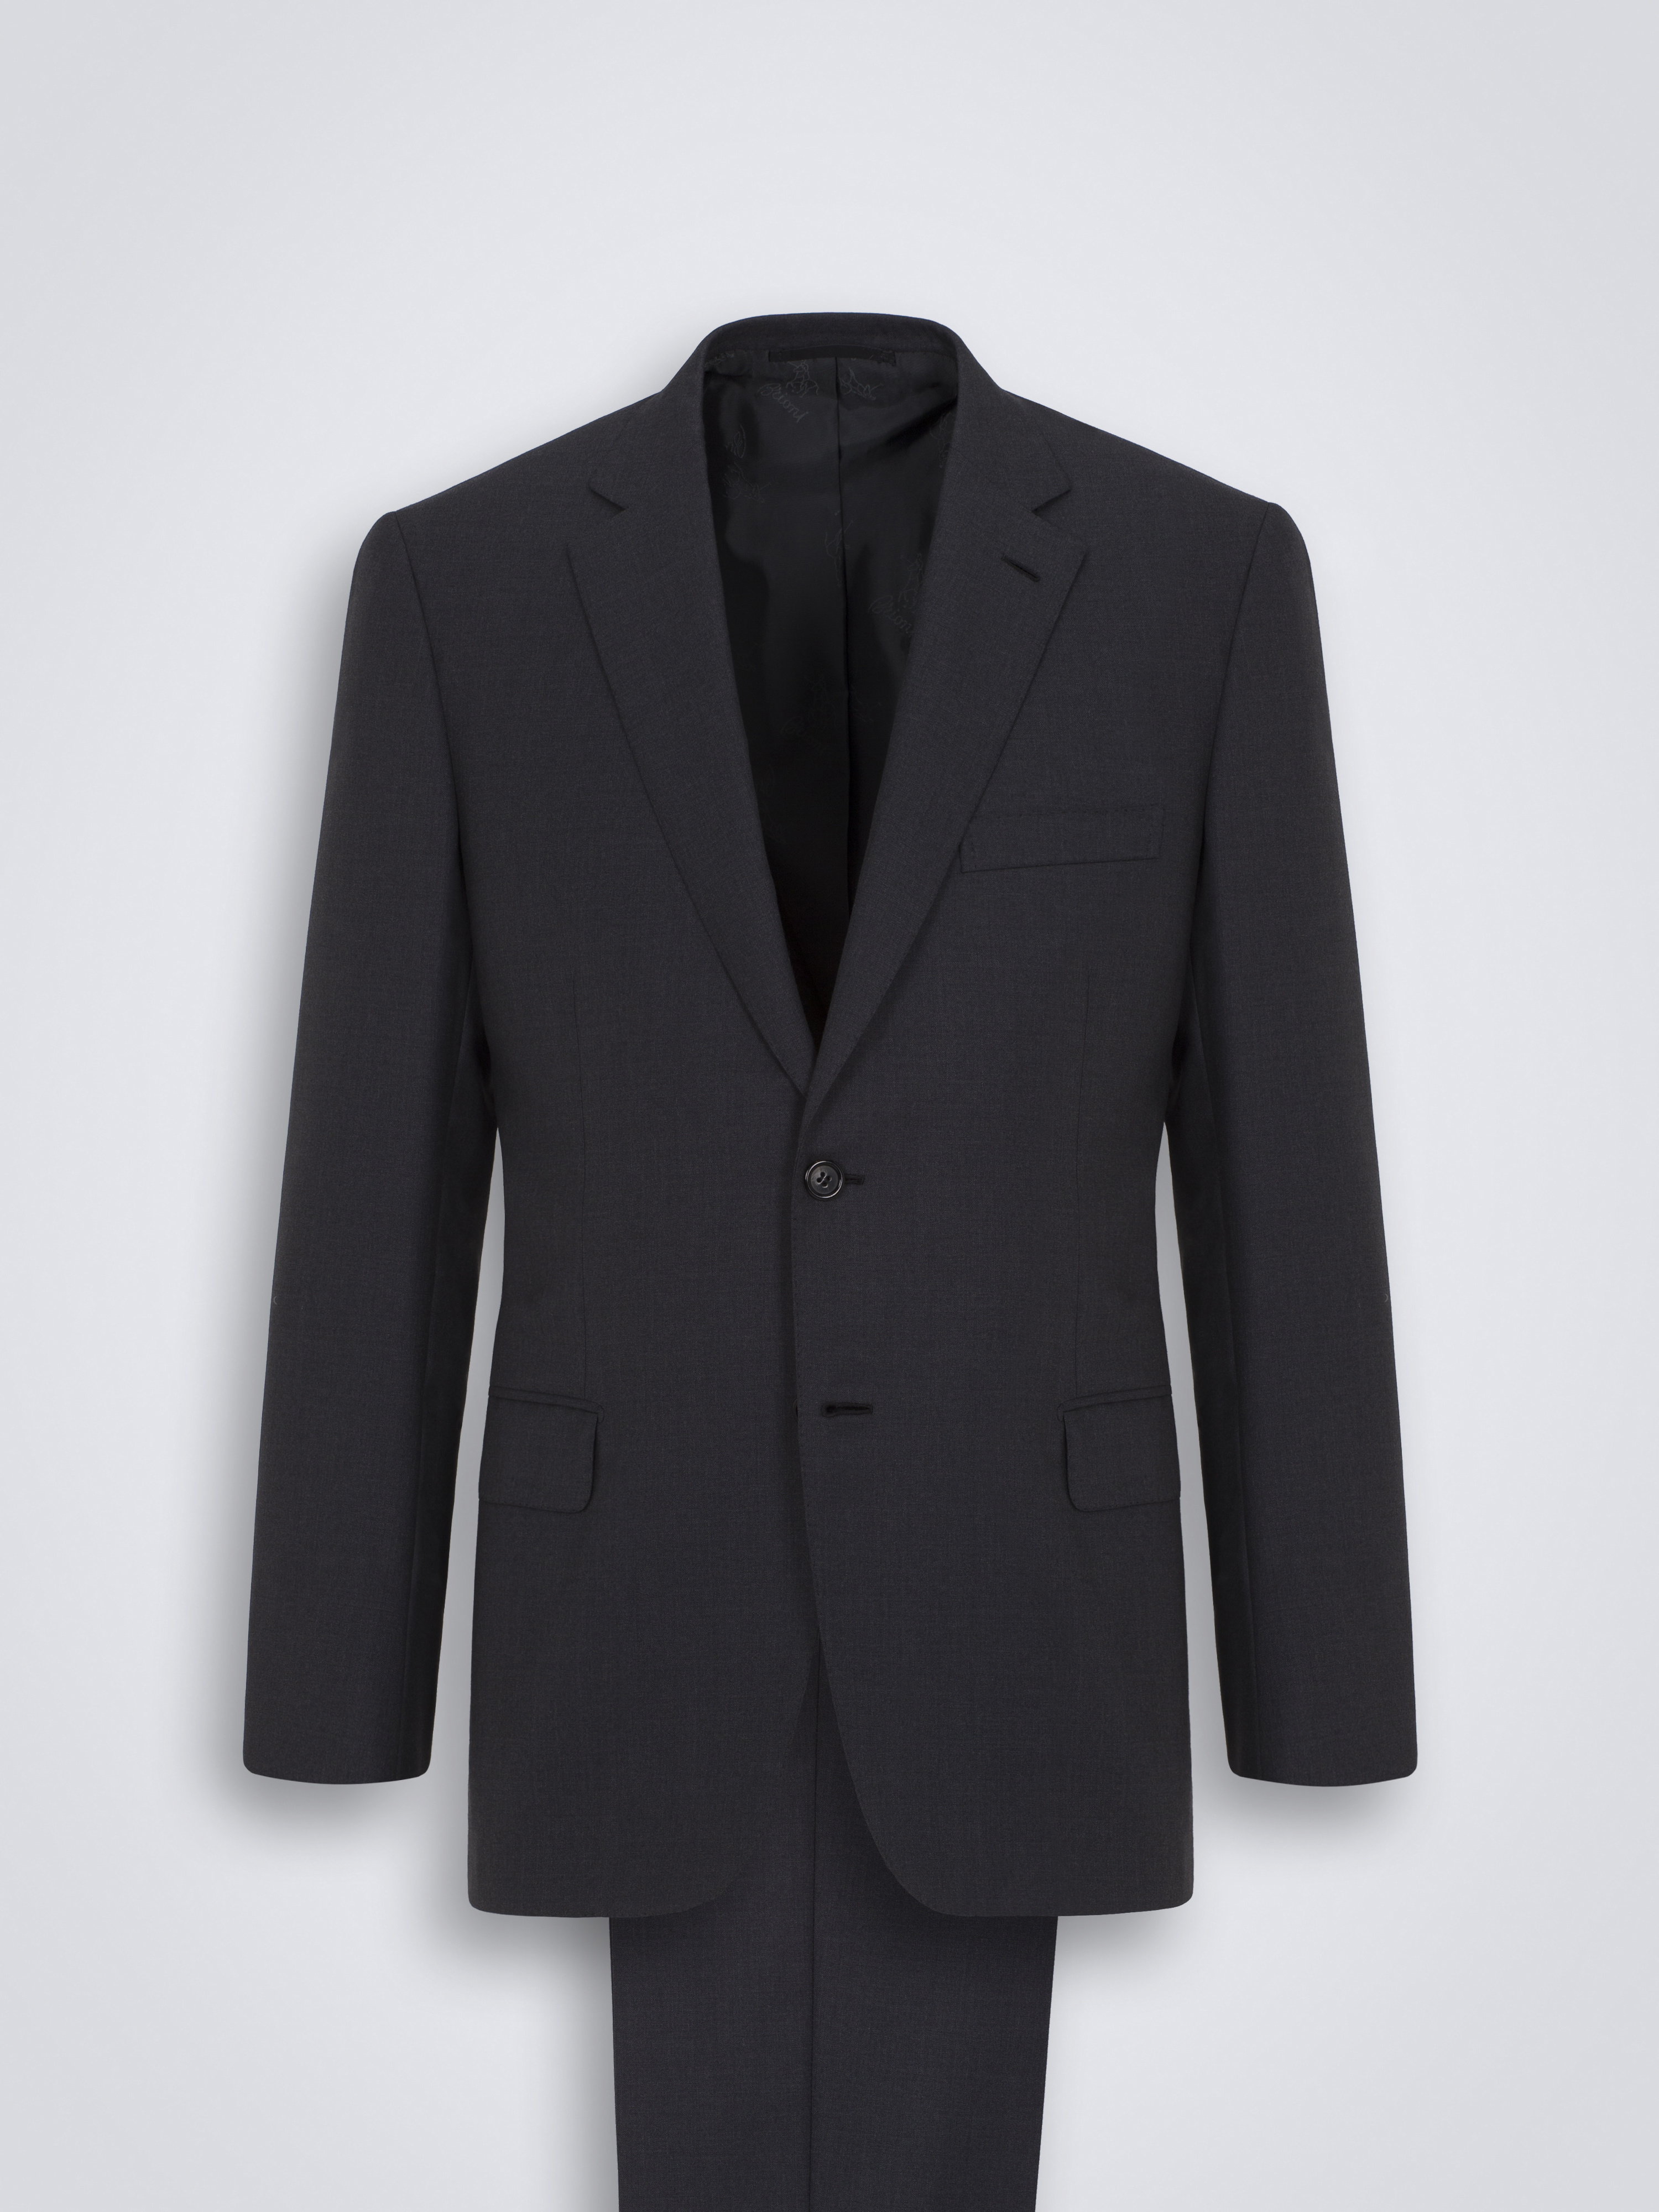 Essential ブルニコ スーツ ブラックスーパー160バージンウール 